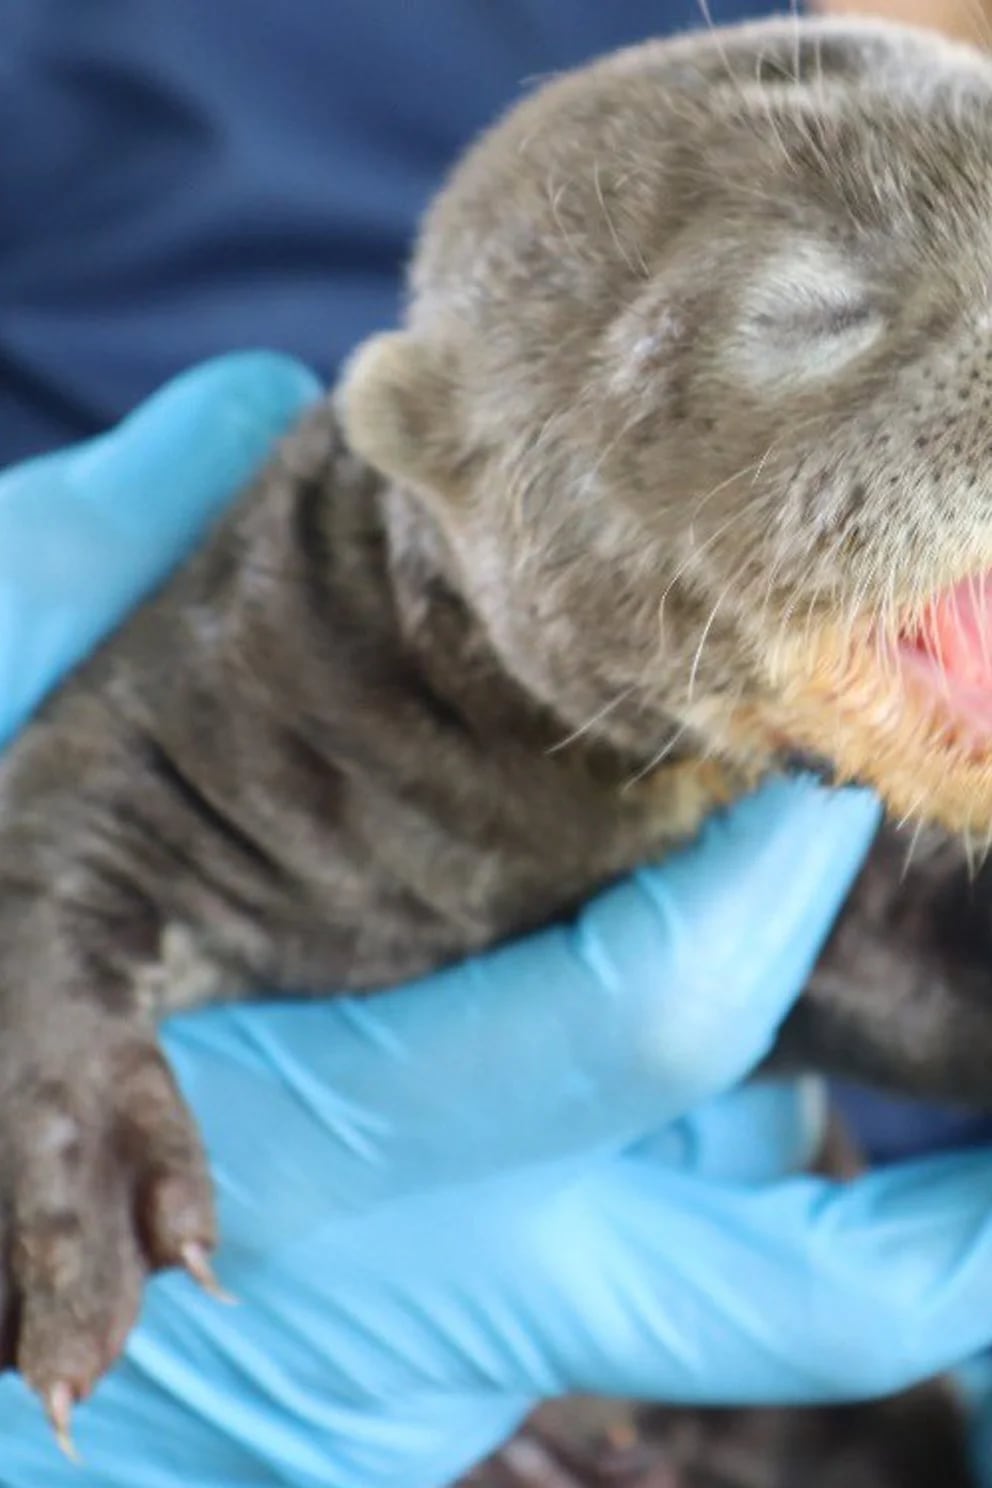 Murió nutria bebé que había sido rescatada por el Zoológico de Cali  CW+  Noticias La triste noticia fue confirmada por el propio Zoológico de Cali,  que a través de sus redes